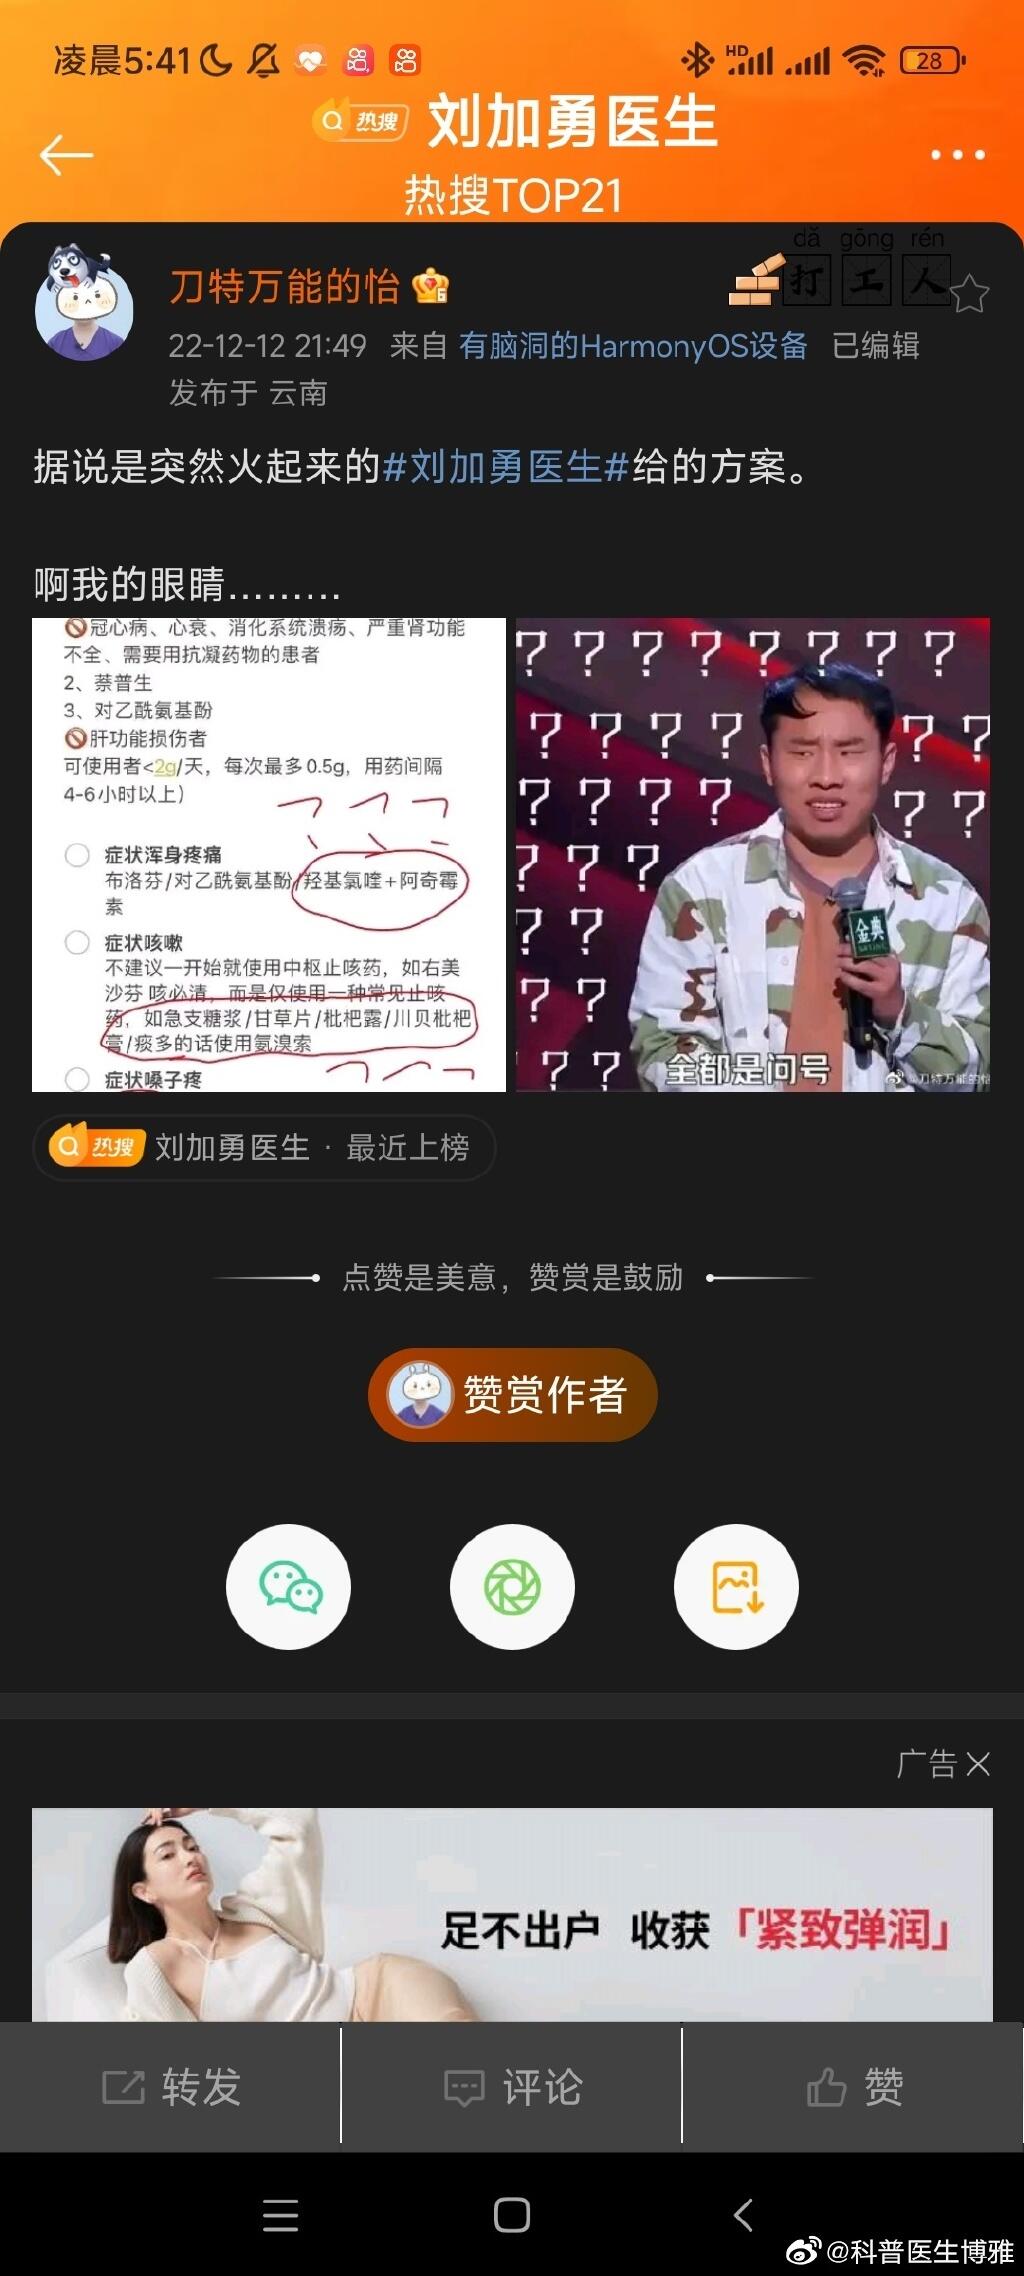 刘加勇医生是从哪毕业的 刘加勇医生的个人资料毕业院校 刘加勇医生视频可信吗